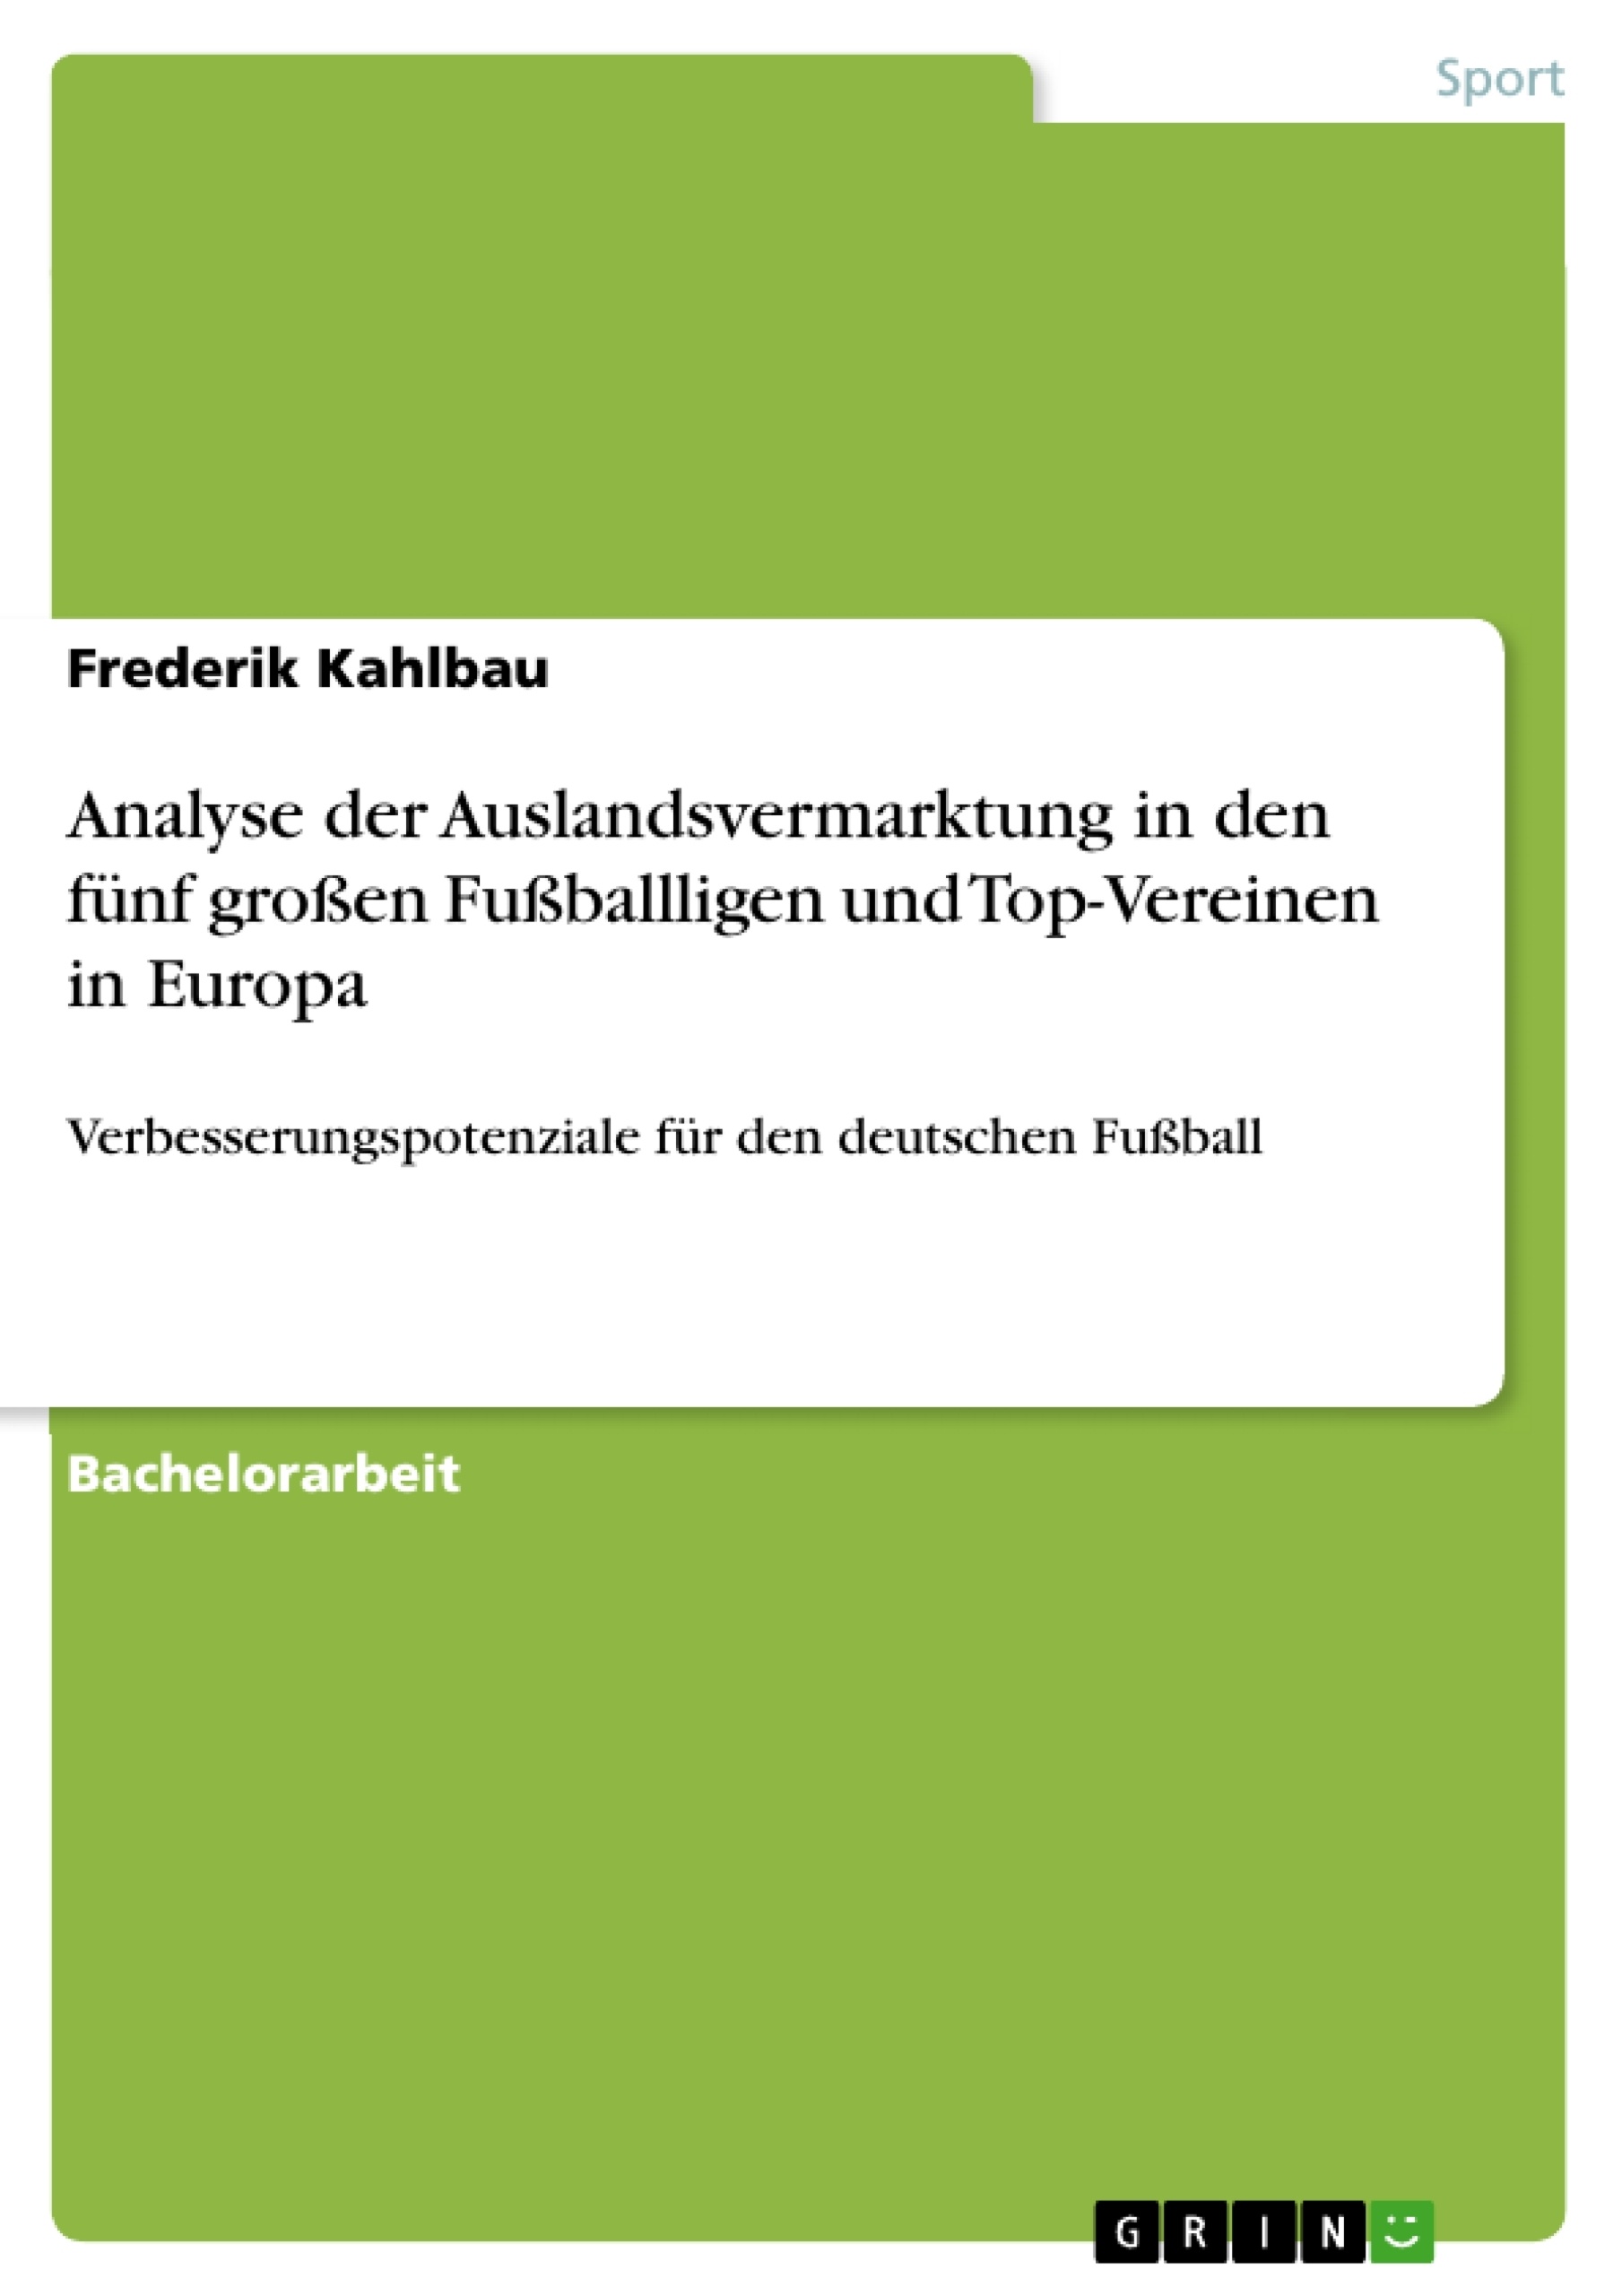 Titel: Analyse der Auslandsvermarktung in den fünf großen Fußballligen und Top-Vereinen in Europa